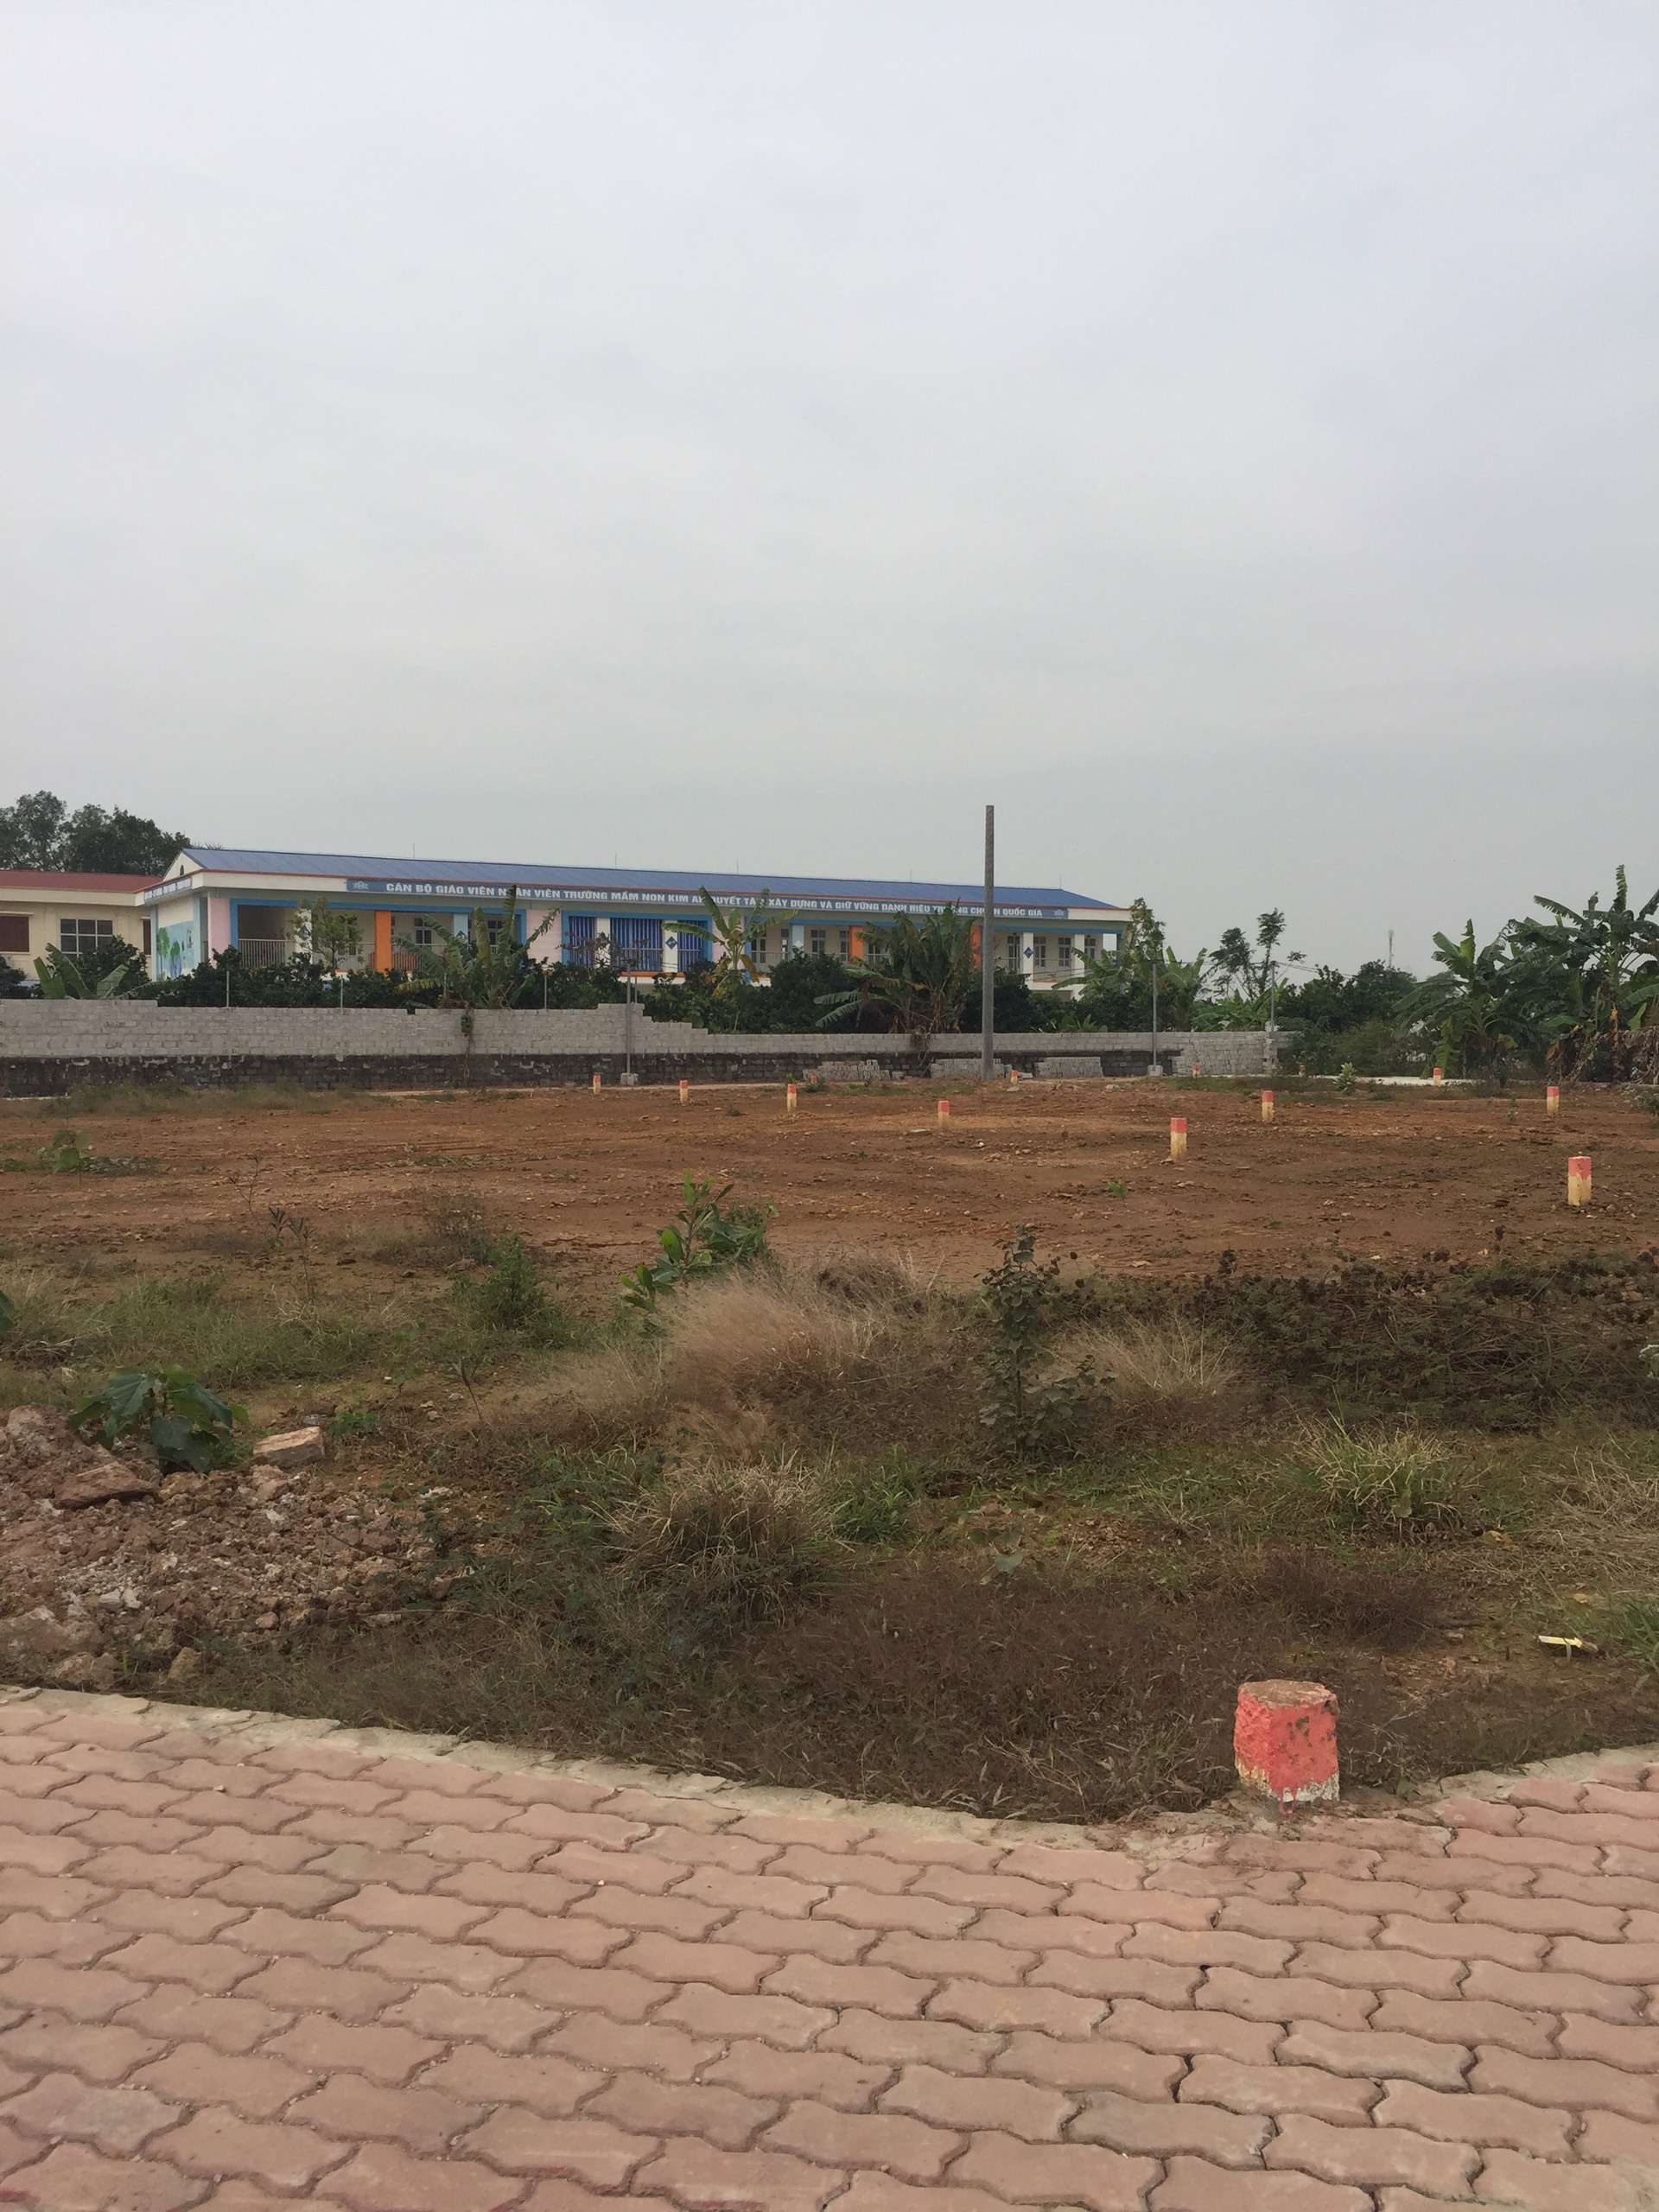 Chính chủ bán lô đất khu đấu giá Đền Hồ Ngọc Liên Kim An thành phố Hà Nội.